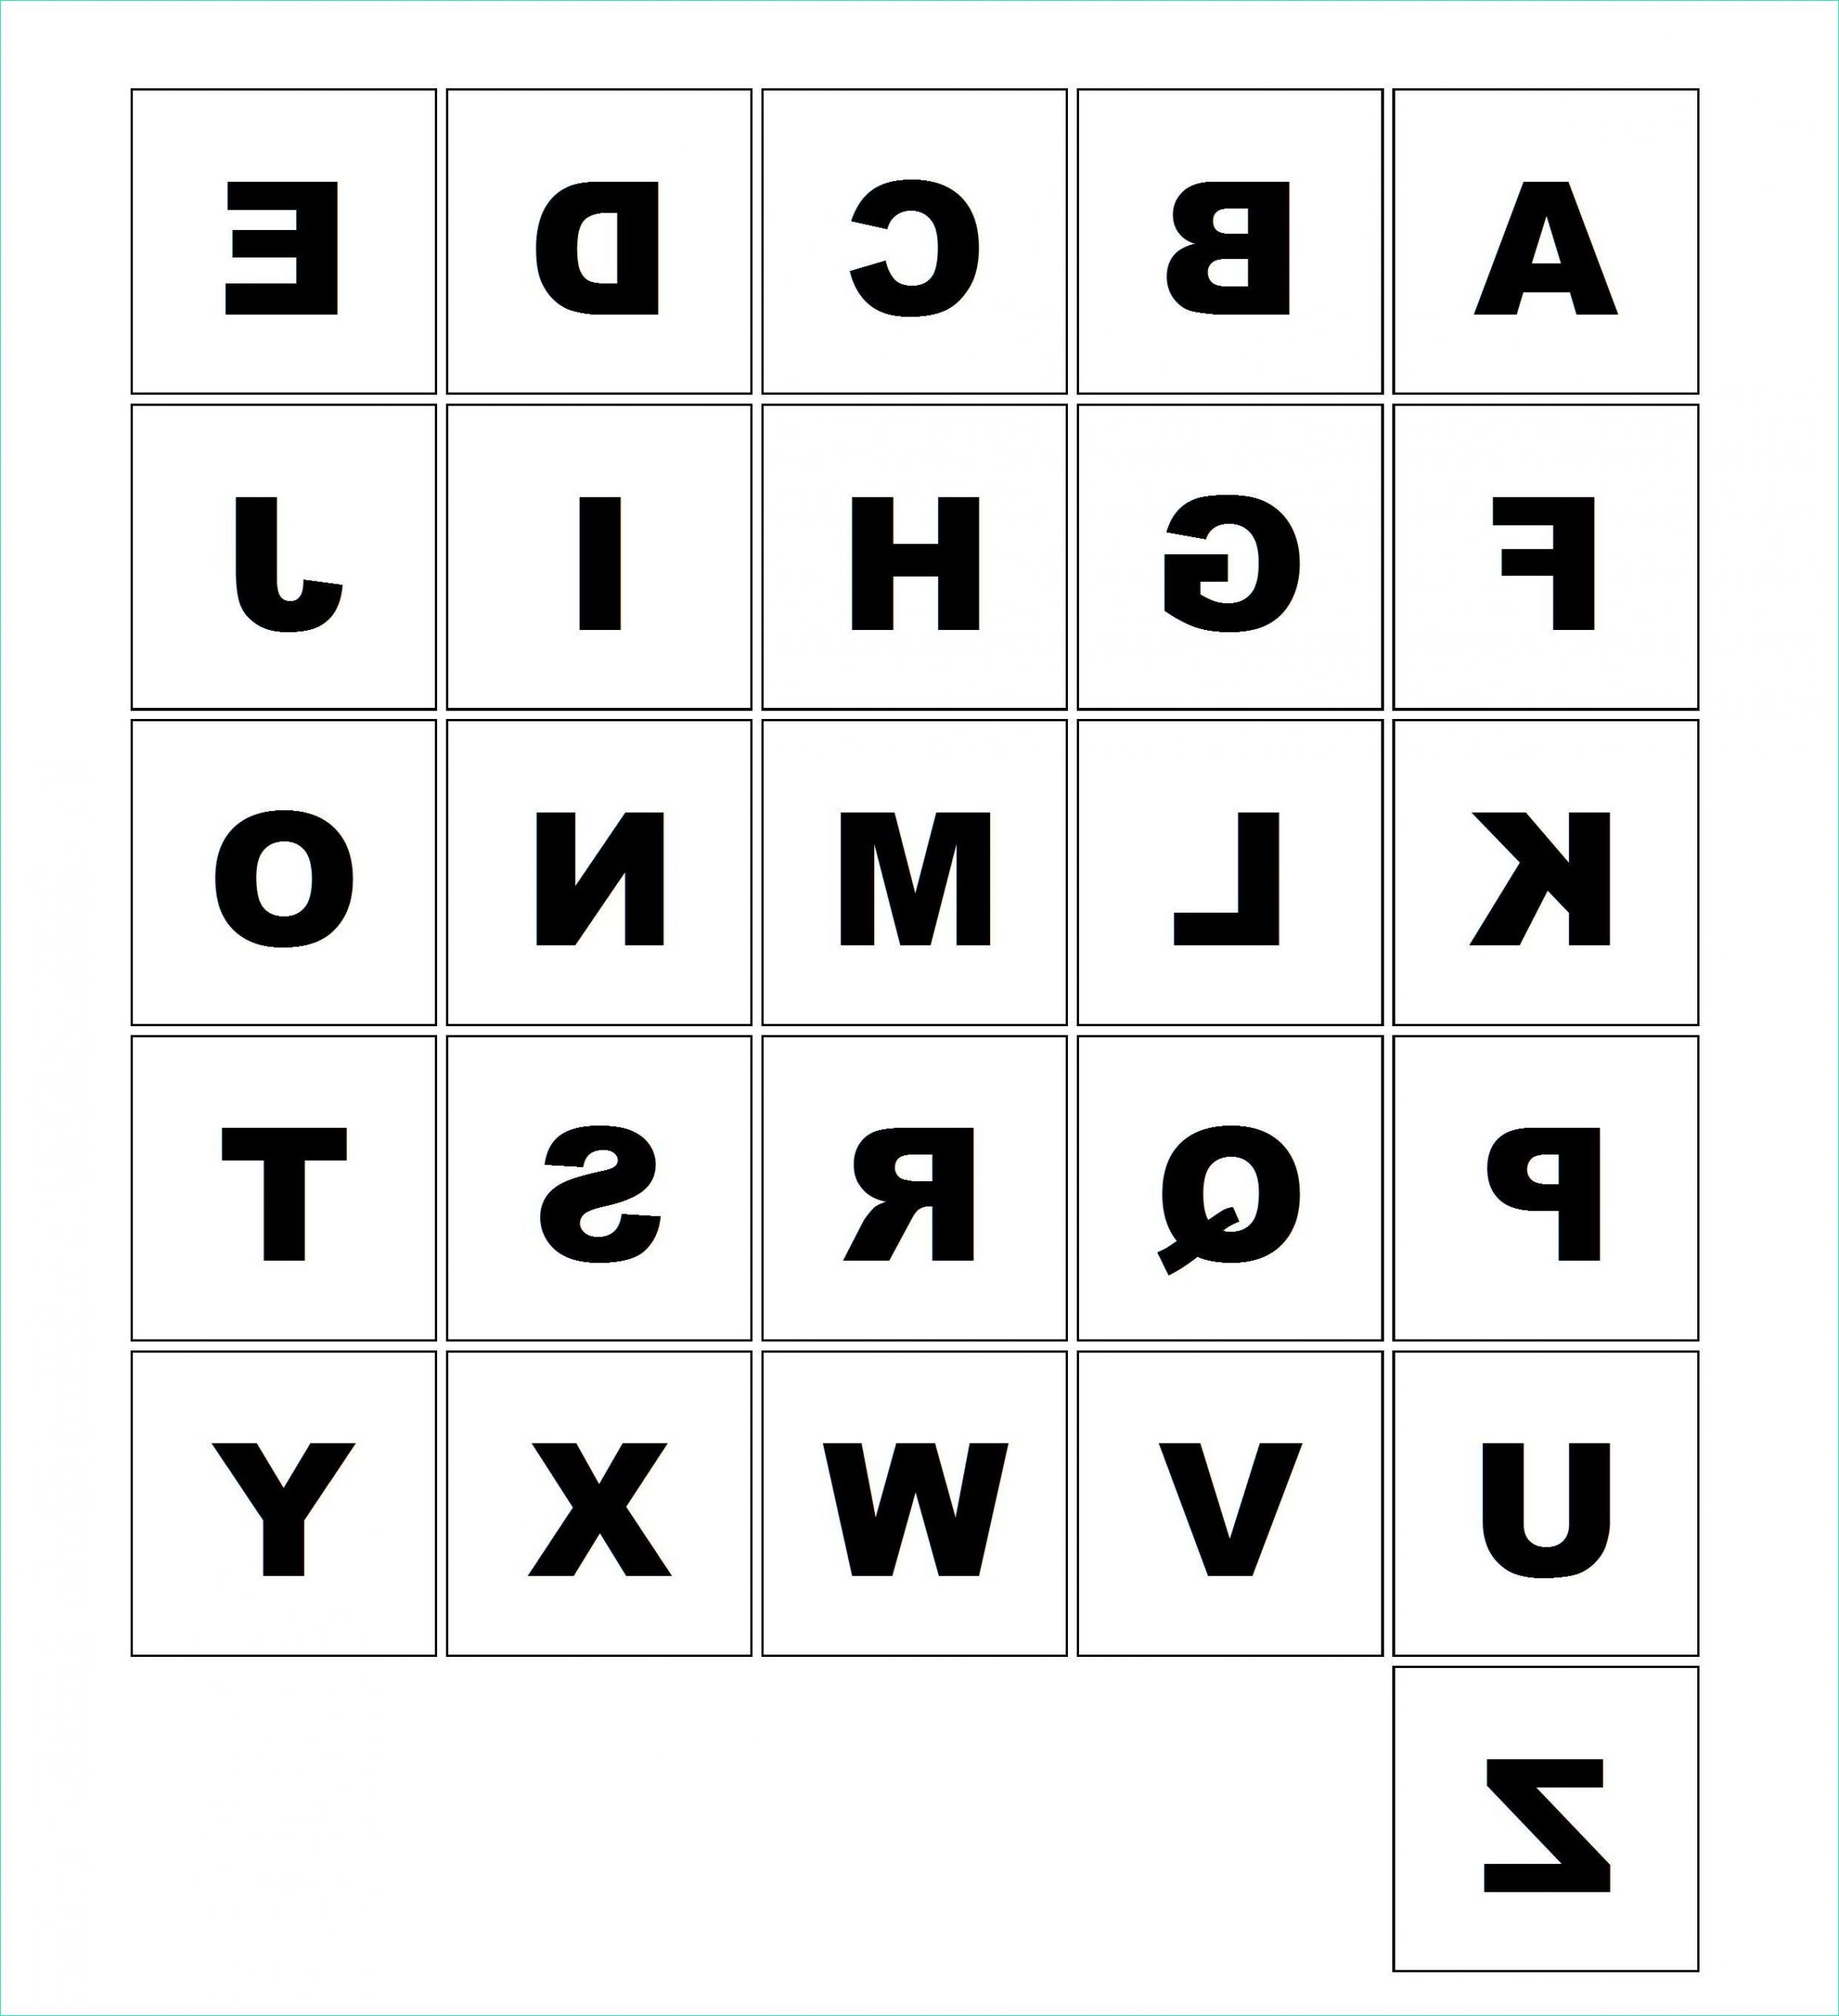 610 jeu de loto de alphabet les cartes lettres